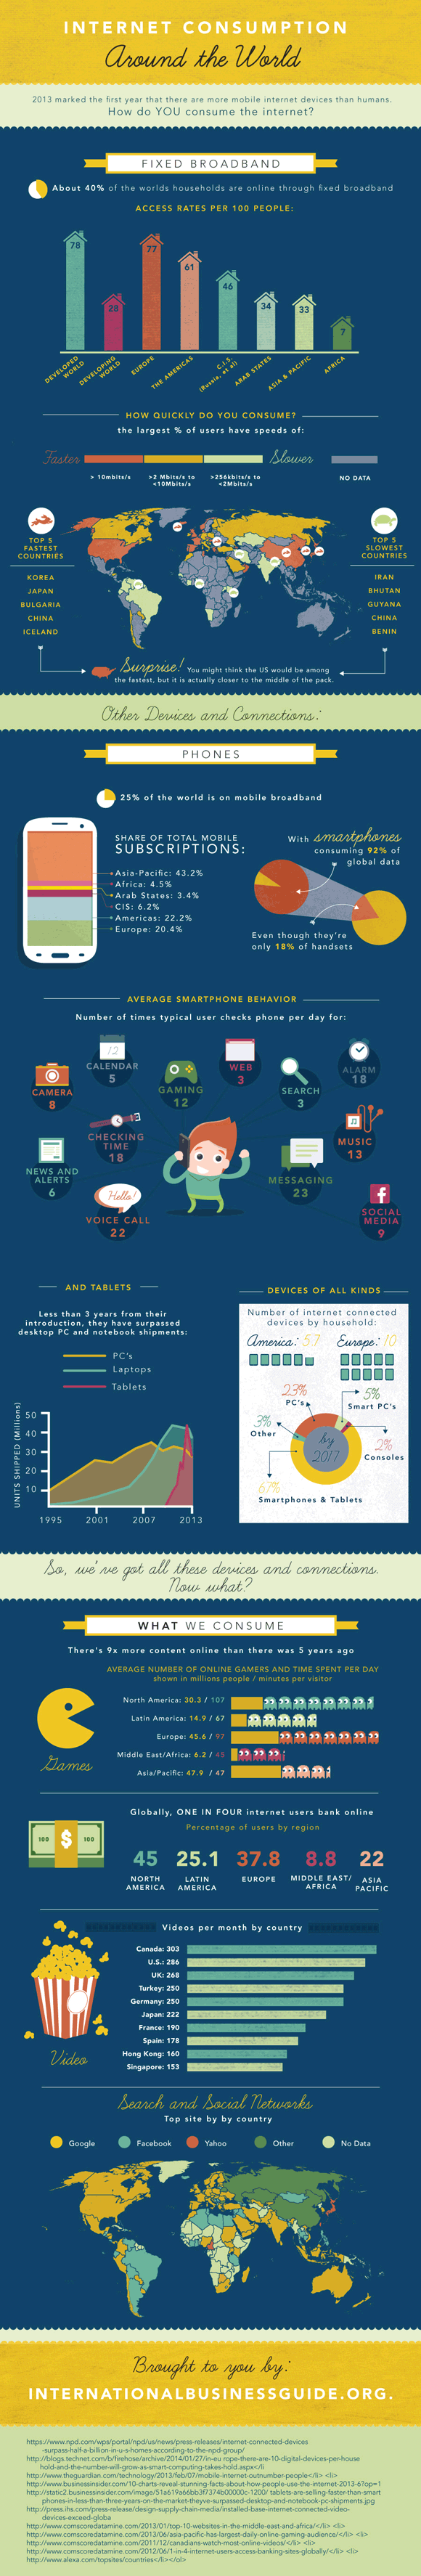 infografia consumo del internet